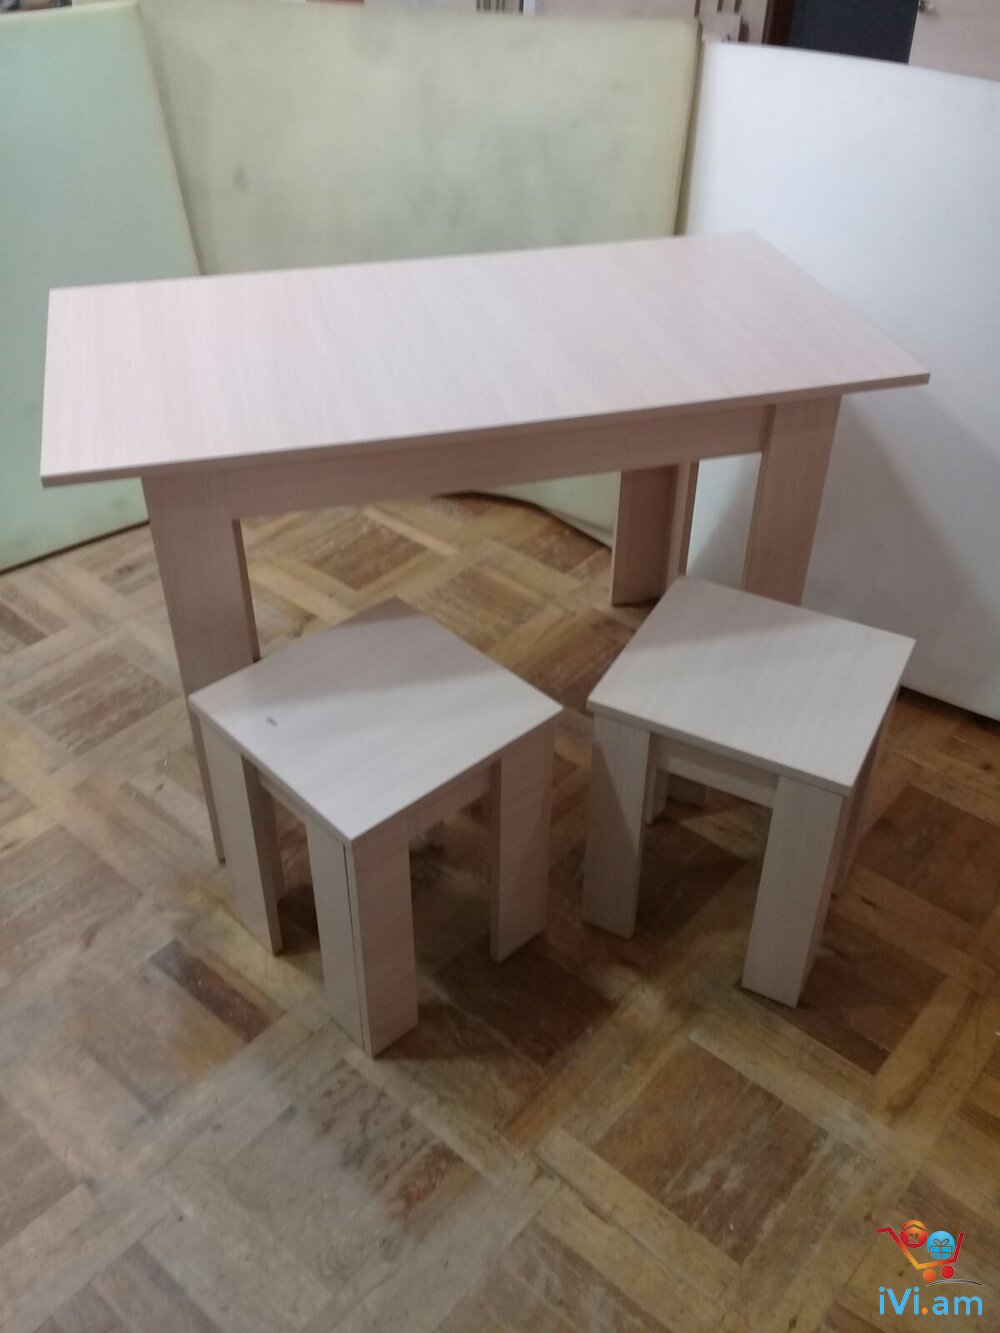 Խոհանոցի աթոռներ և սեղաններ 2 - Լուսանկար 1